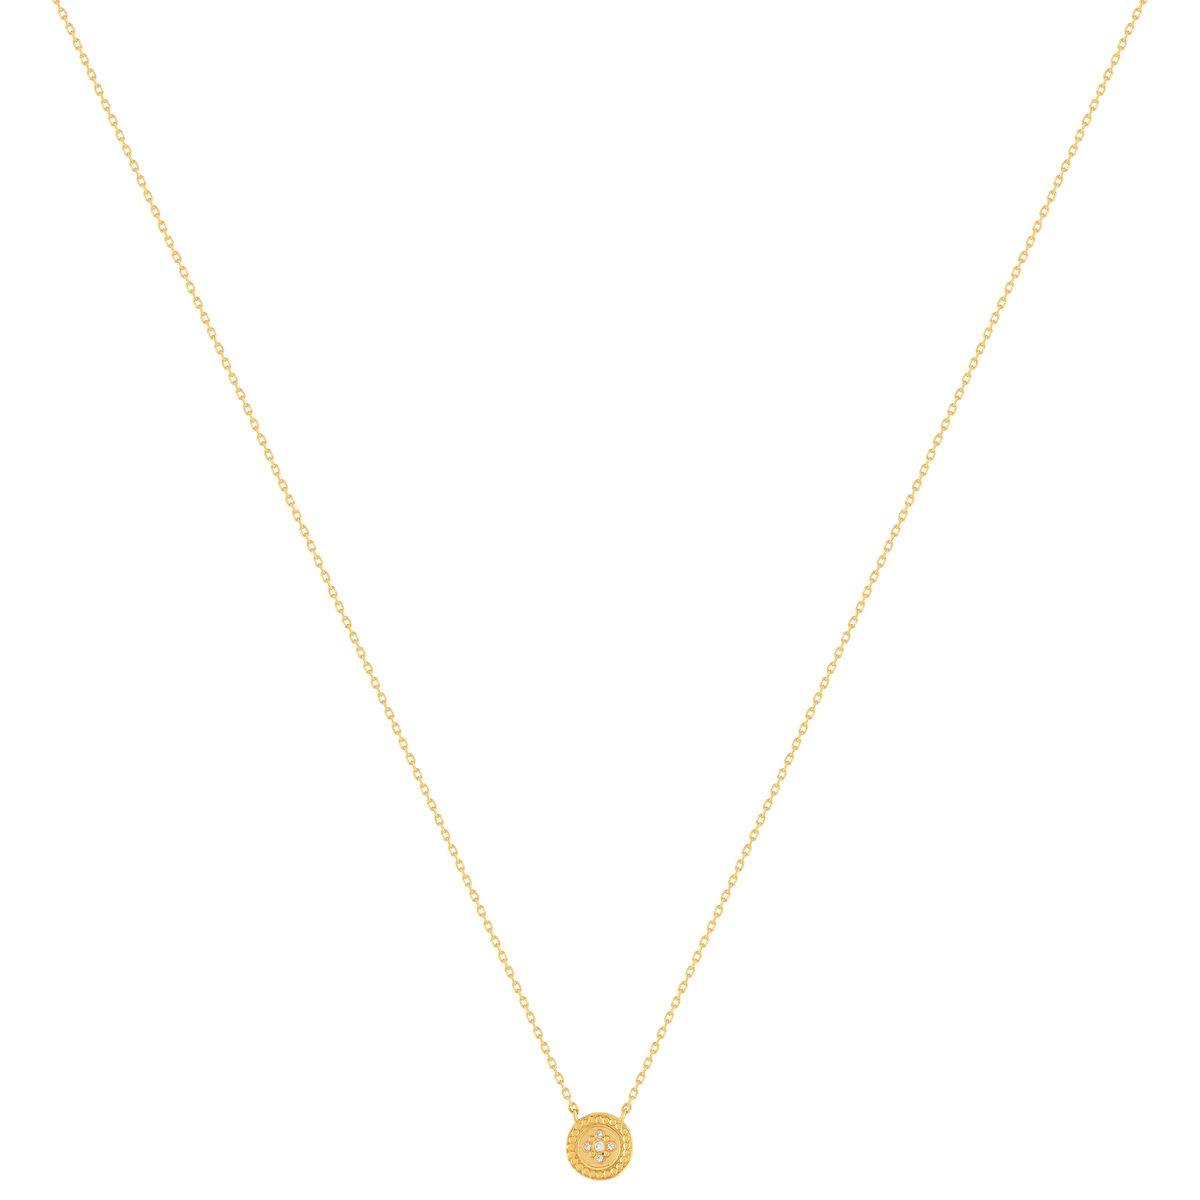 Collier plaqué or jaune médaillon perlé zirconias 45 cm - vue 2